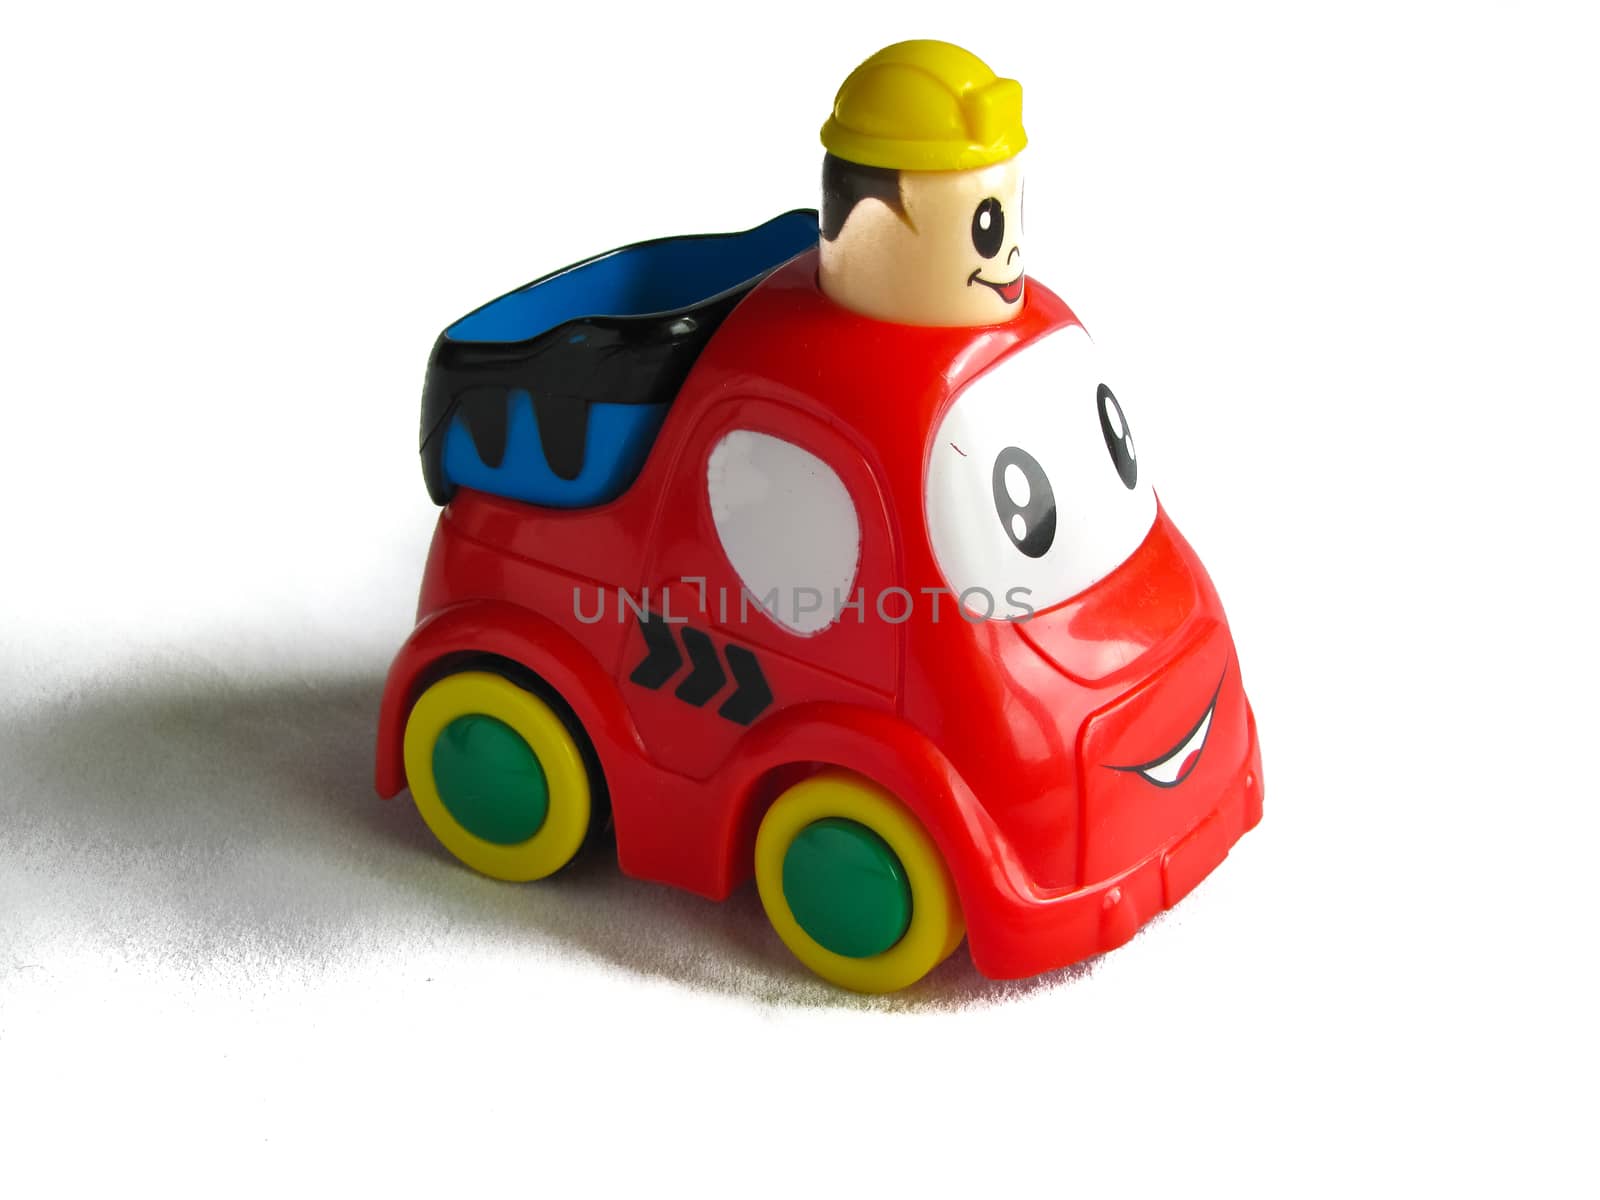 little toy car by rodakm